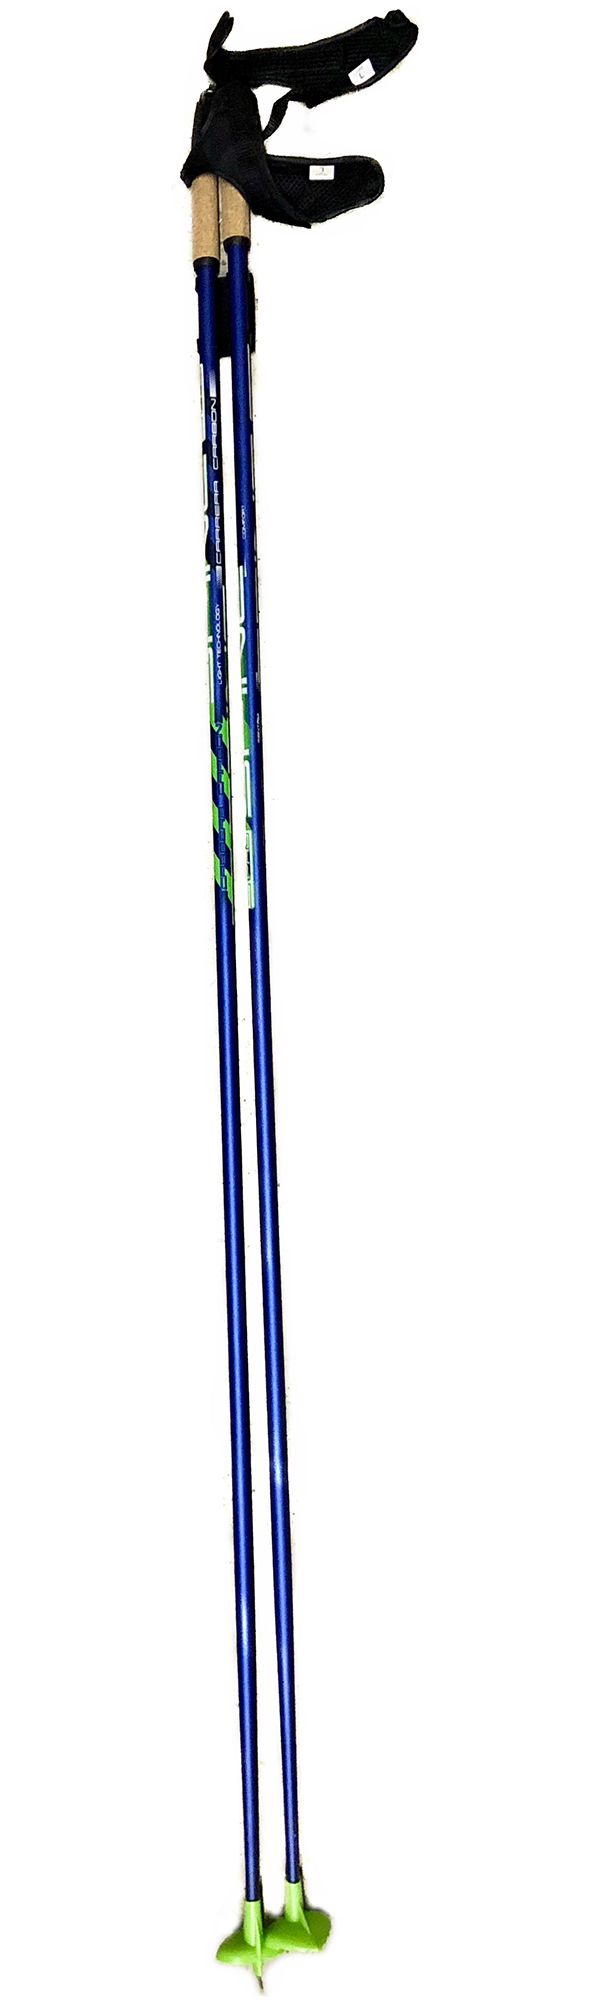 Палки лыжные SPINE Carrera Carbon  10016 1,40 м Сине-зеленый